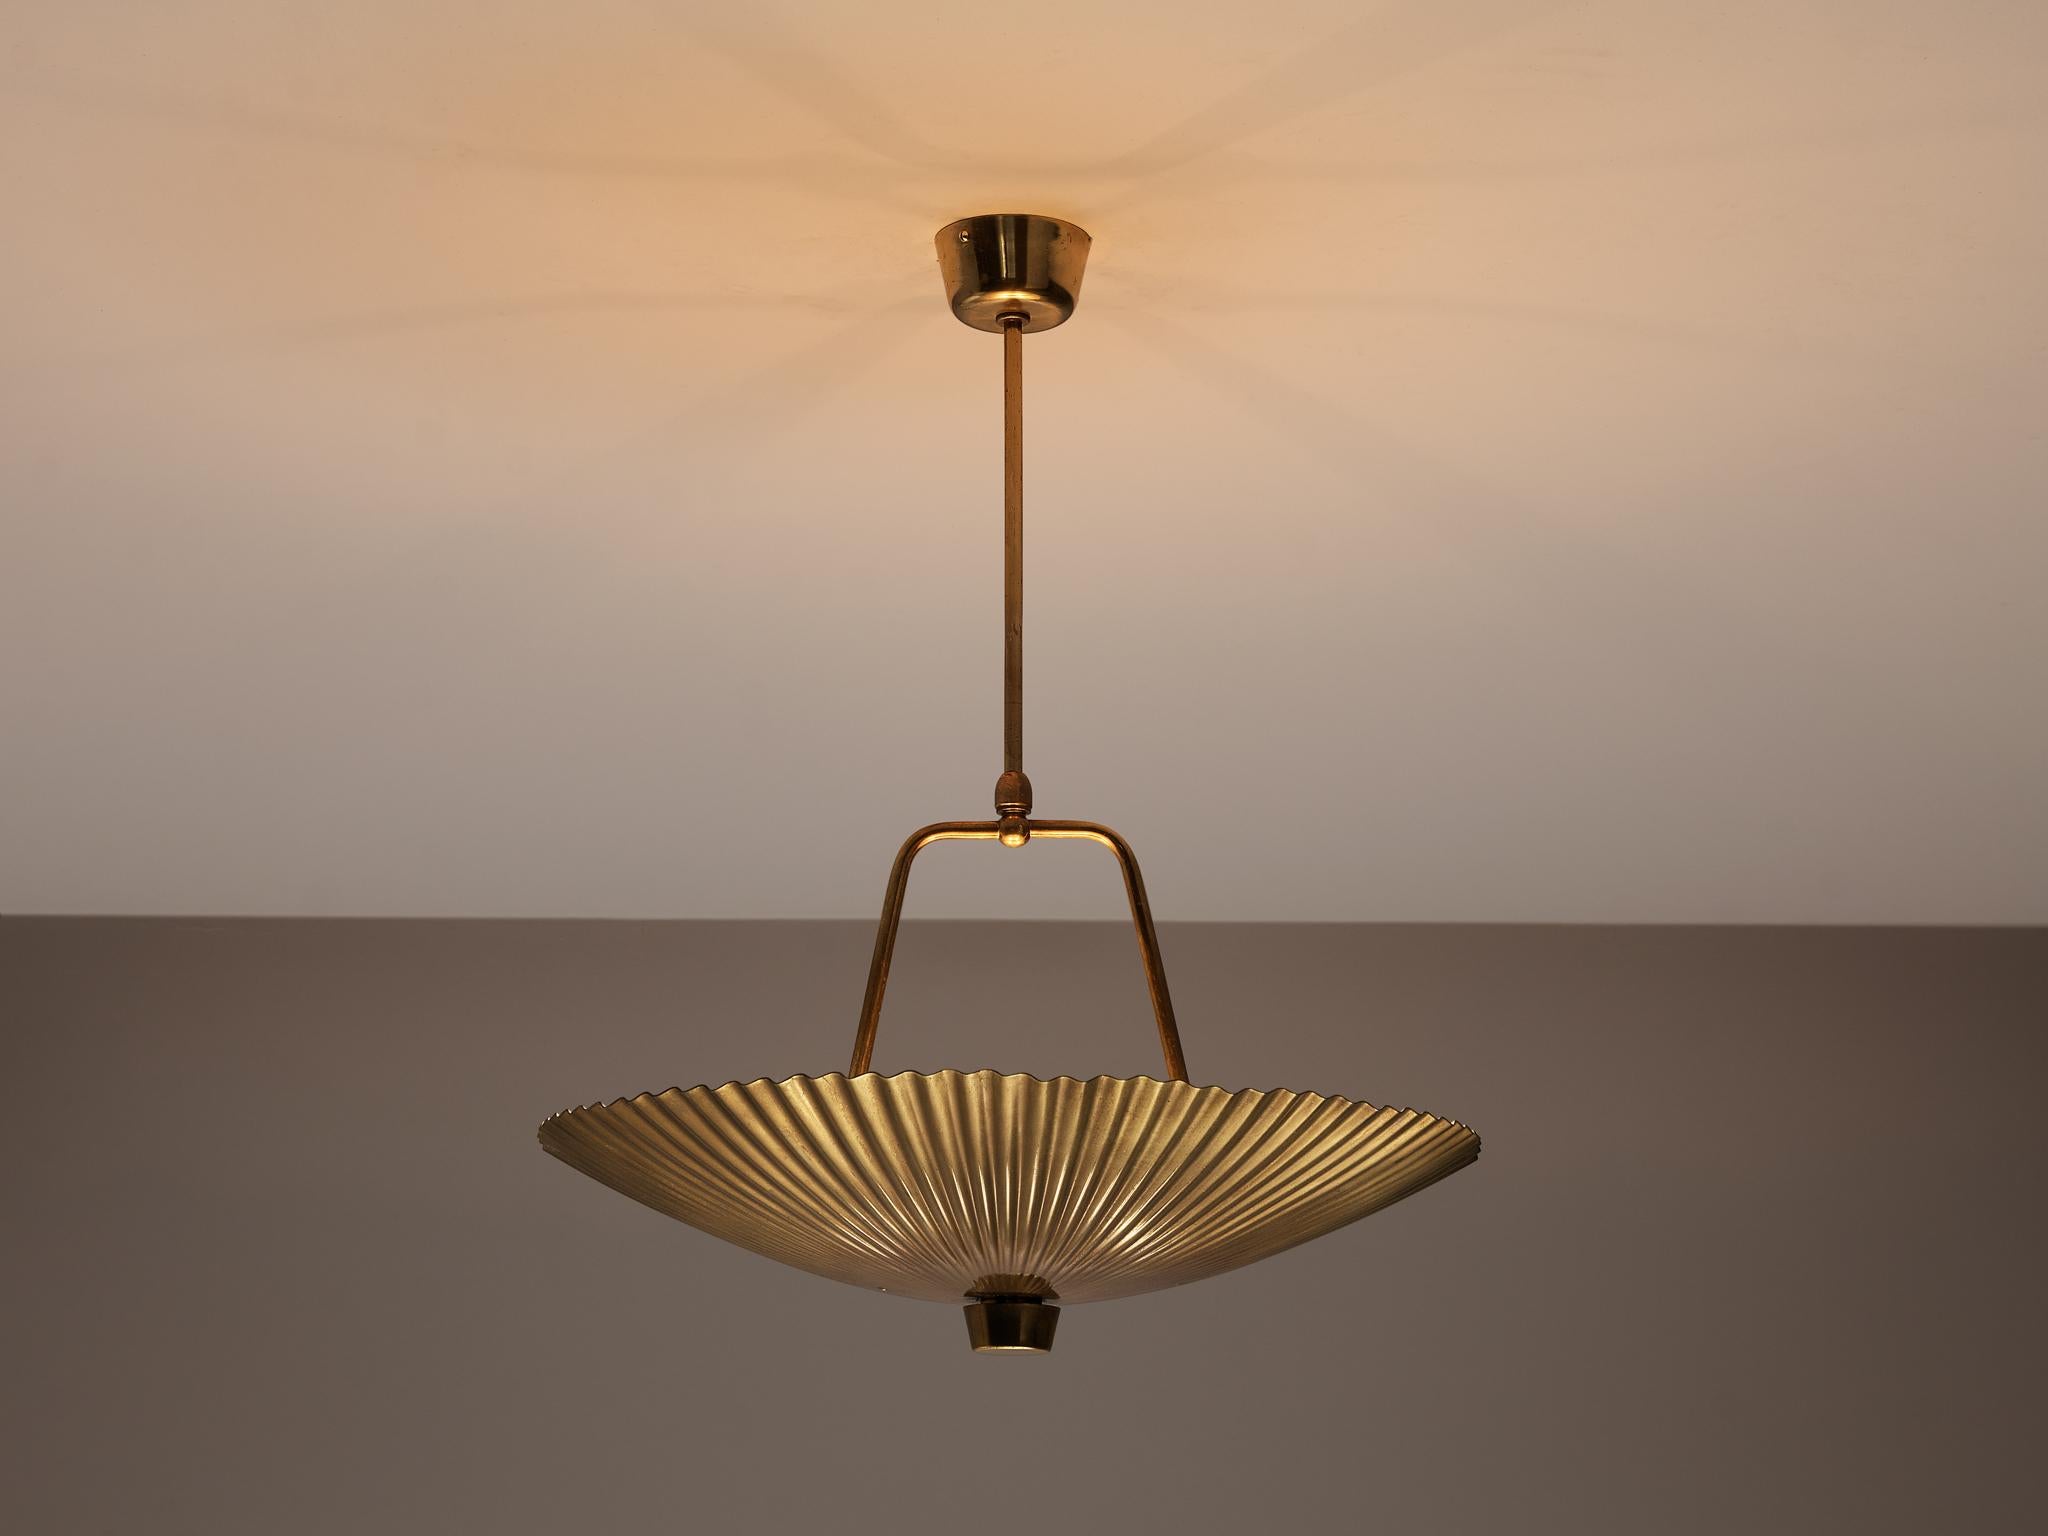 Paavo Tynell pour Idman, lampe suspendue, laiton, Finlande, années 1960

Lustre exclusif du designer finlandais Paavo Tynell pour Idman. La texture ondulée de l'abat-jour a été utilisée par Tynell pour des lustres ainsi que pour une lampe de table.